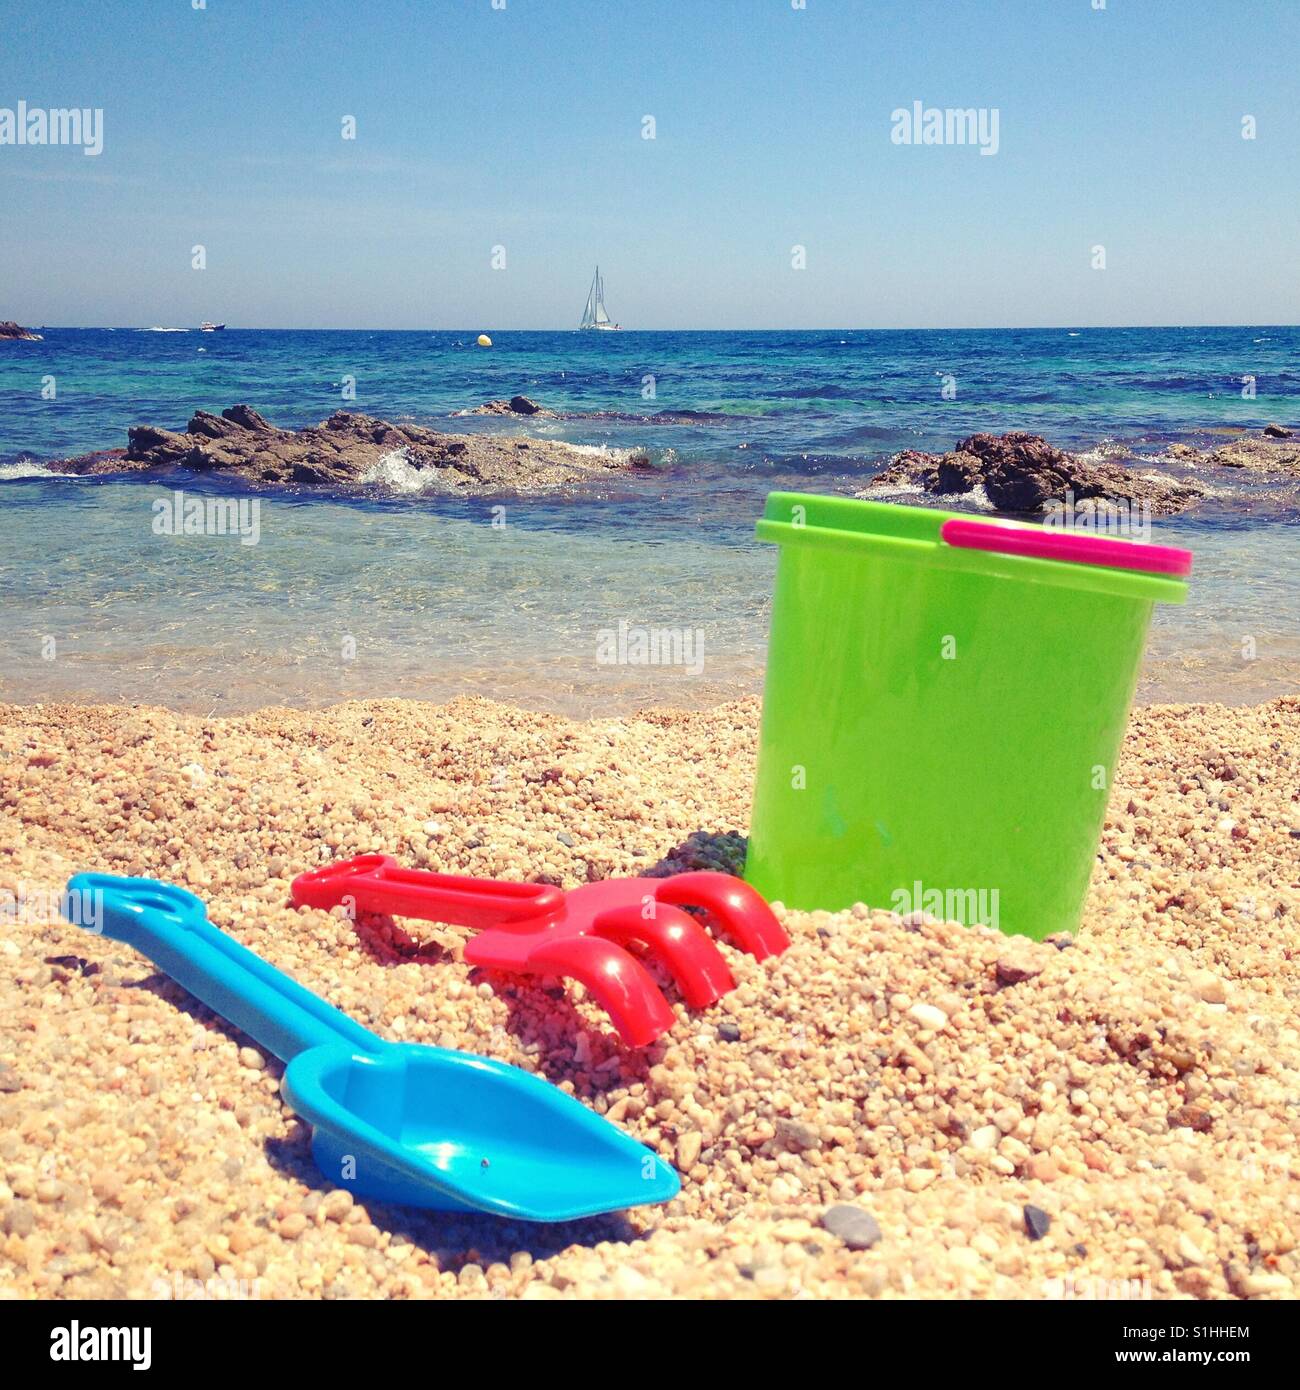 Sommer-Szene am Strand mit Spielzeug auf dem Sand und Segelboot im Meer. Stockfoto